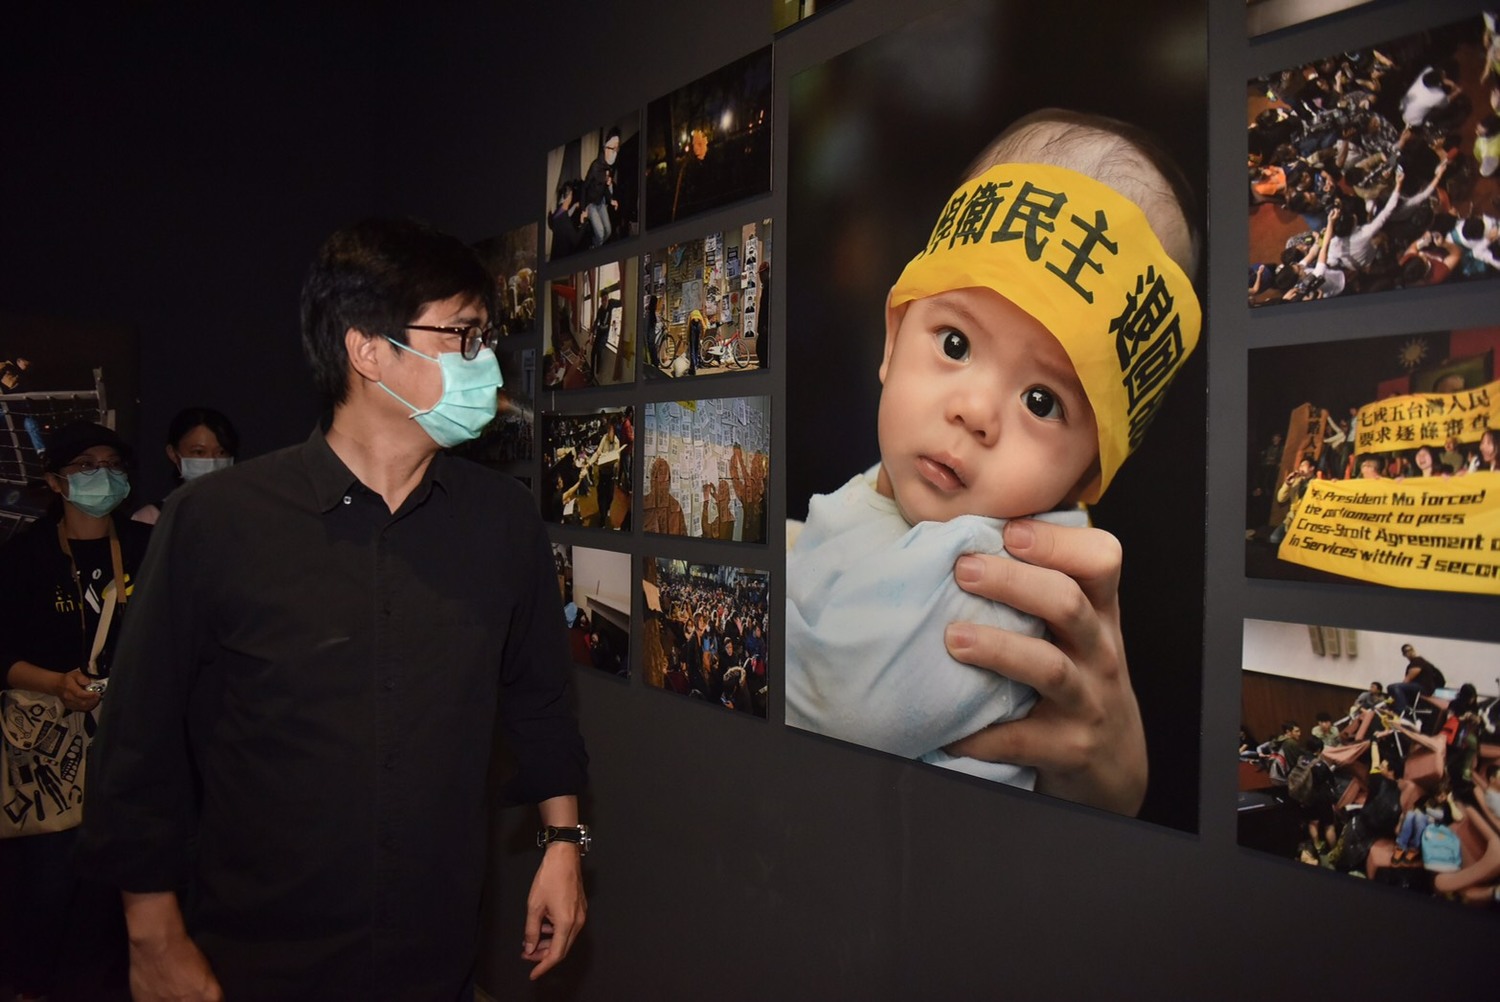 陳其邁觀看「香港反送中」「返校」展  呼籲珍惜民主自由